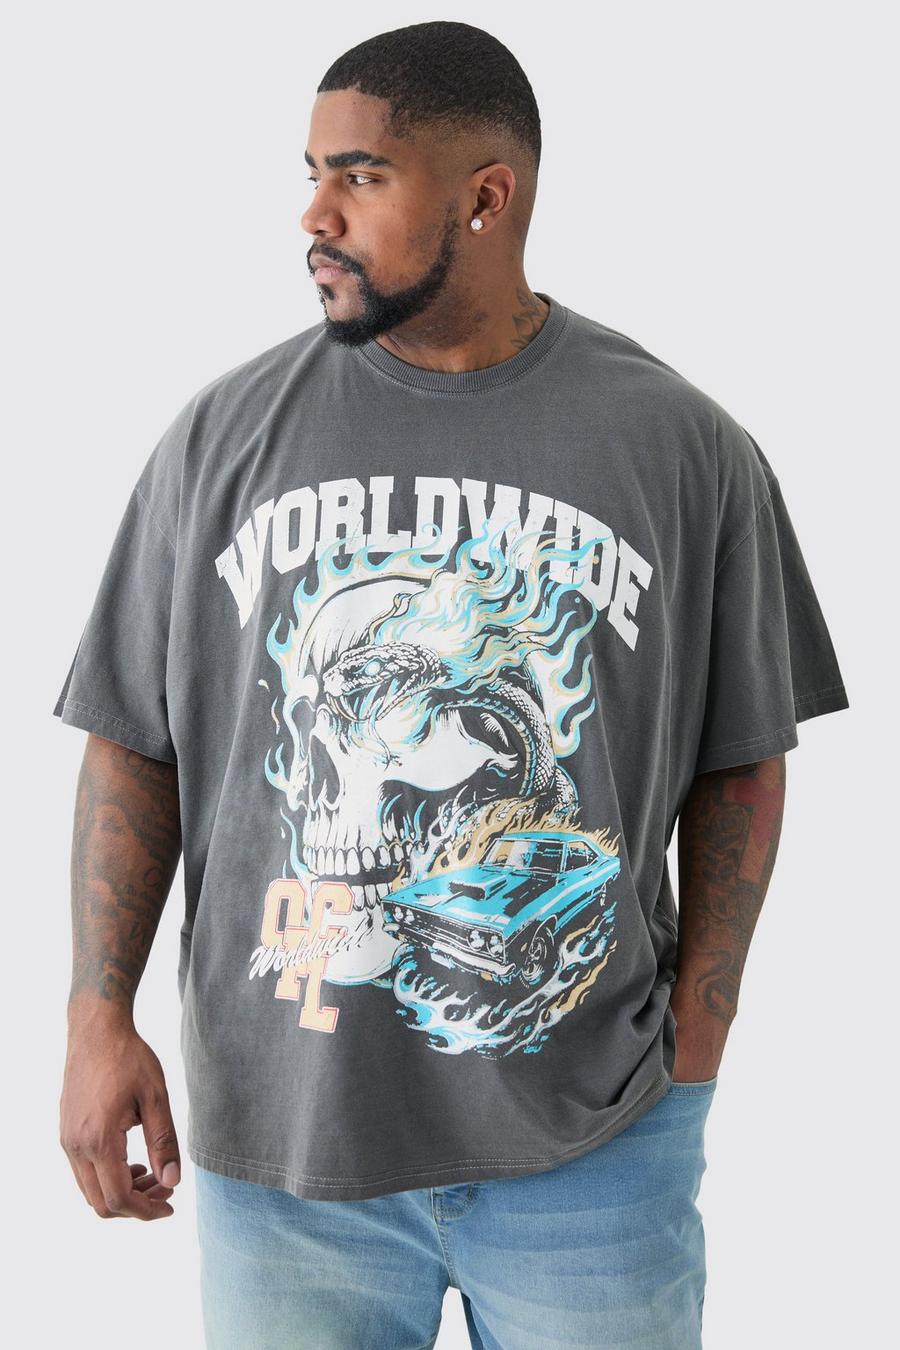 T-shirt Plus Size Worldwide in lavaggio acido con caratteri gotici, Grey